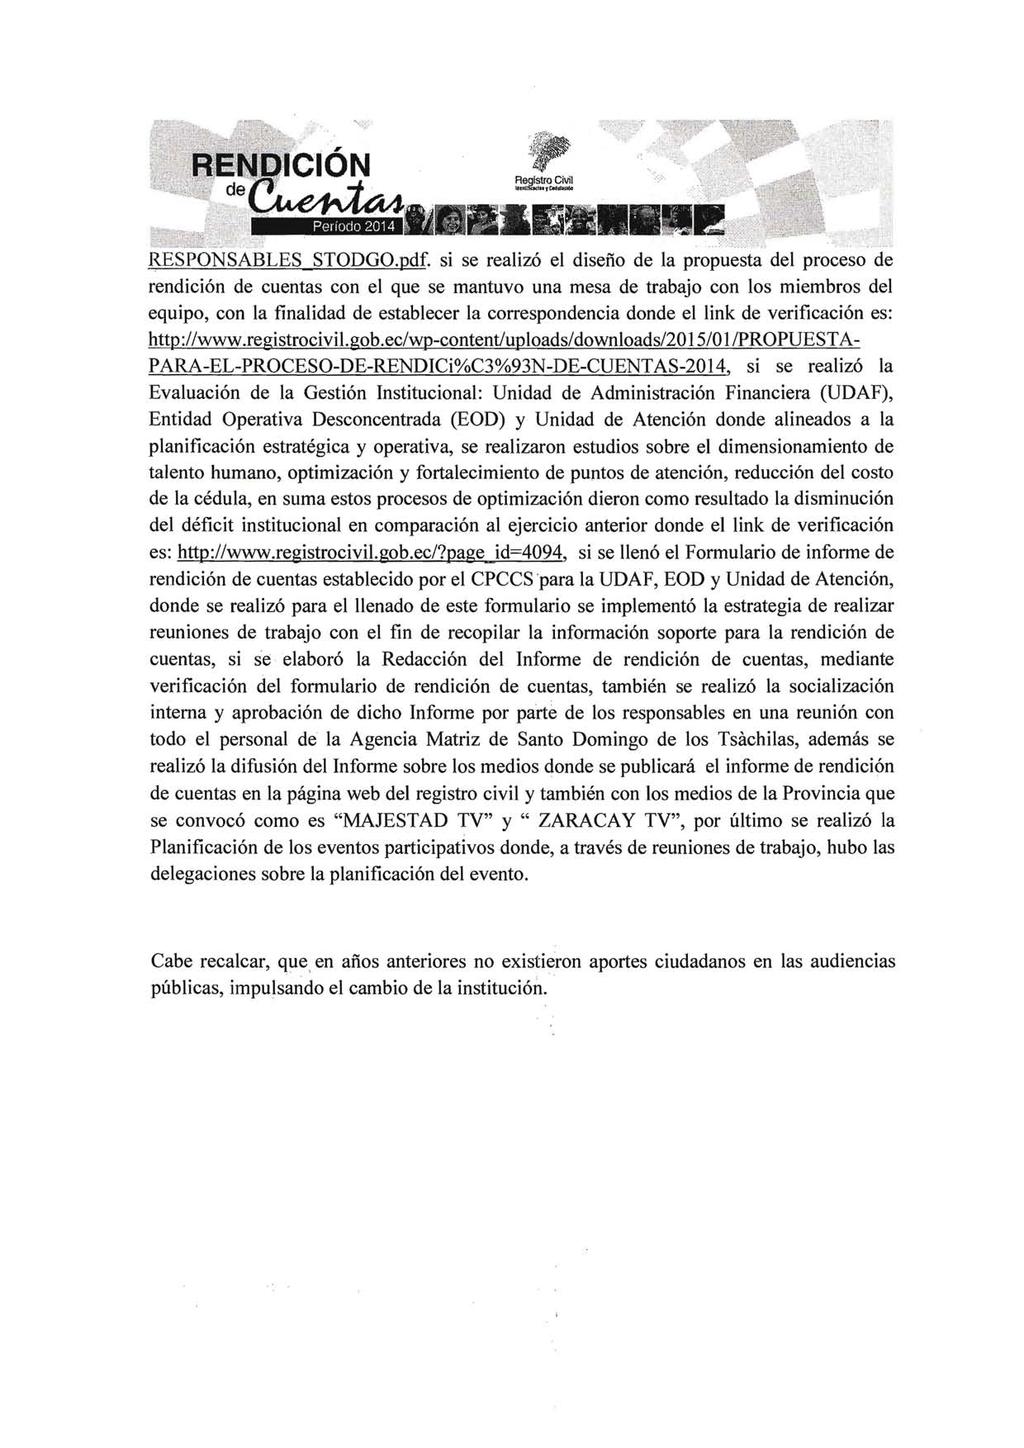 Pel iodo 2014 ~~!~~ a :,',;), ' RESPONSABLES STODGO.pdf.